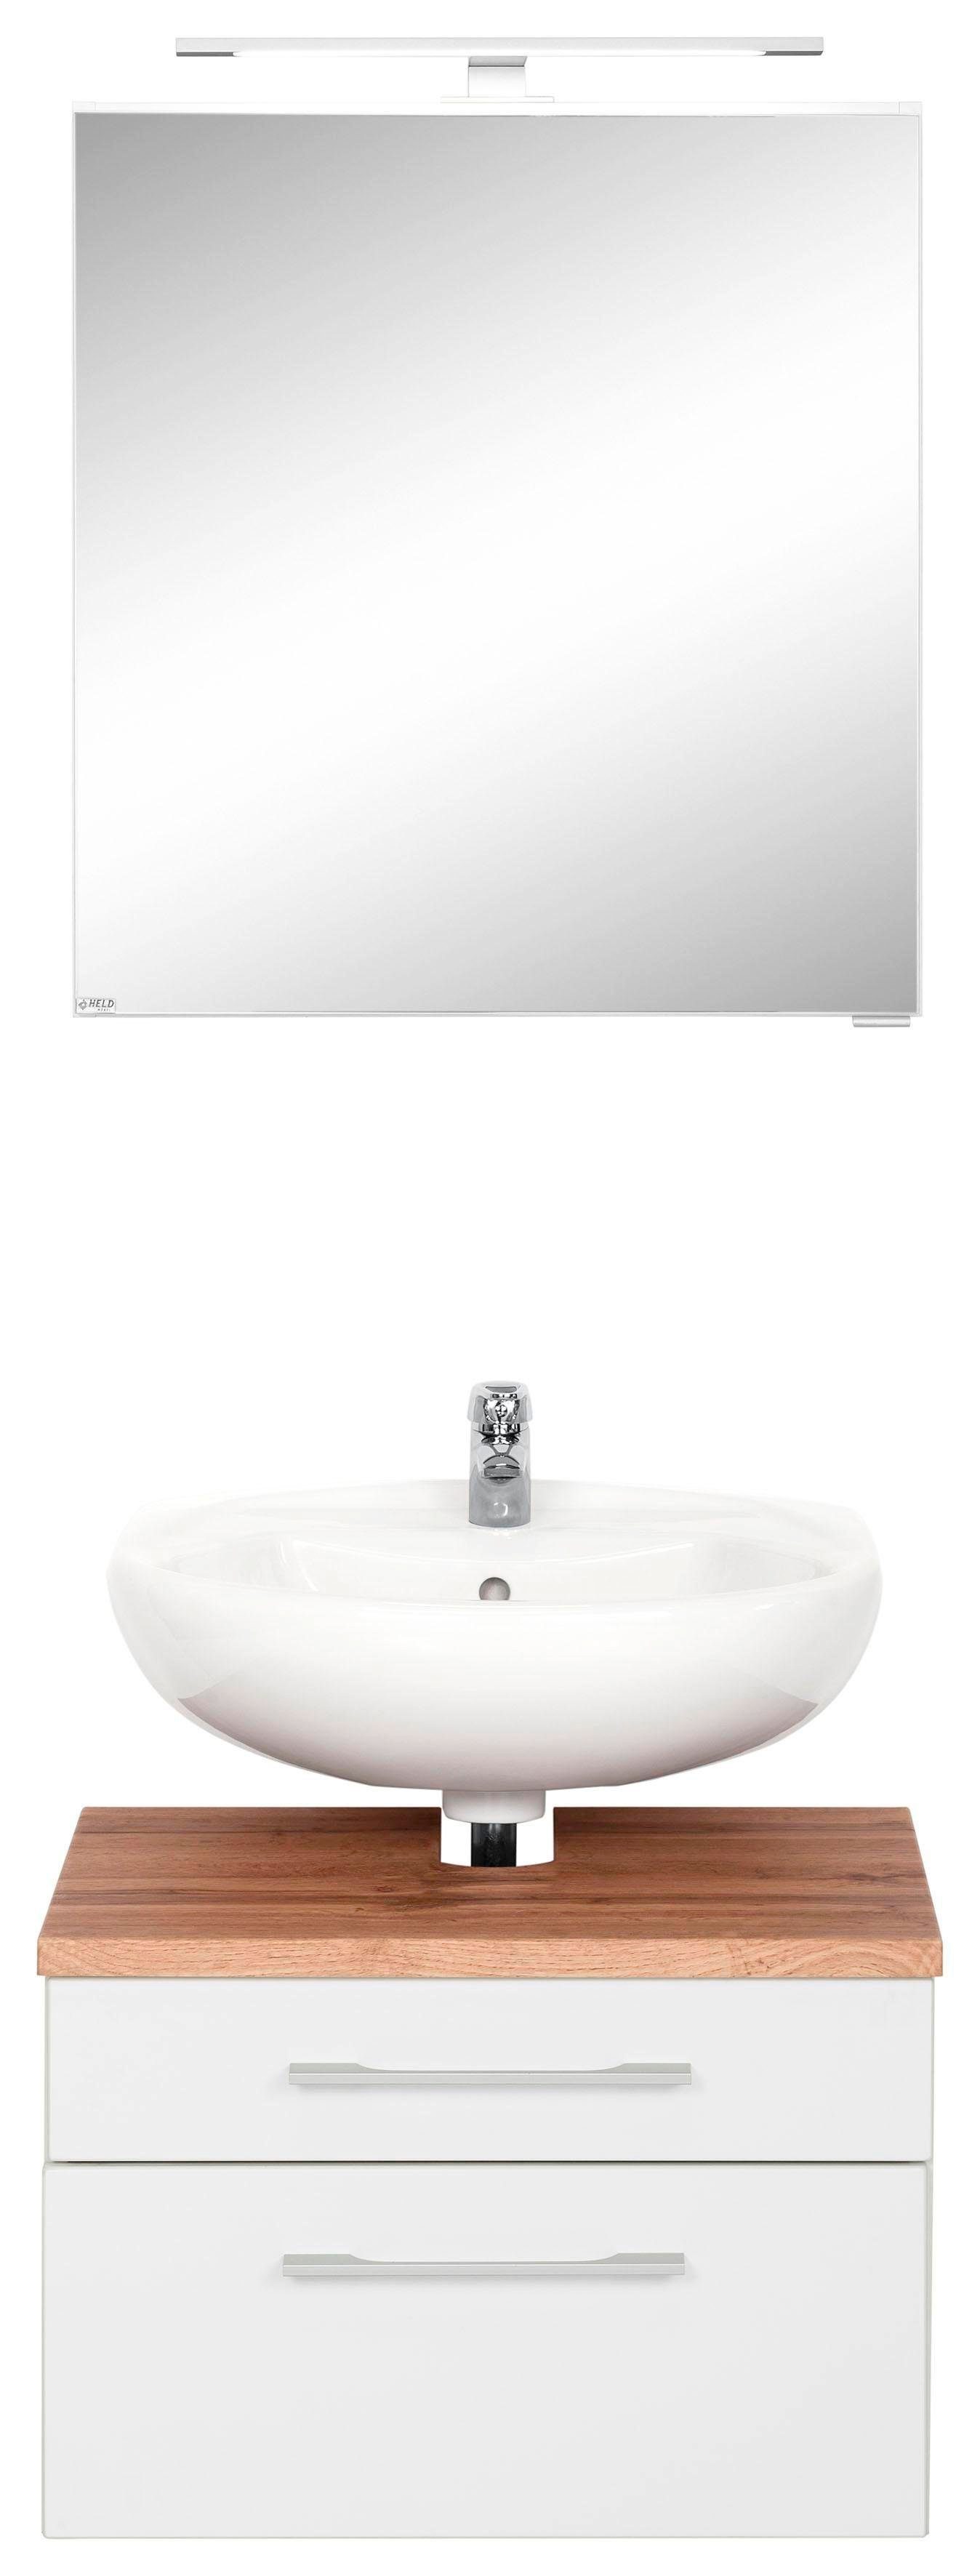 held moebel badkamerserie davos spiegelkast en wastafelonderkast (2-delig) wit